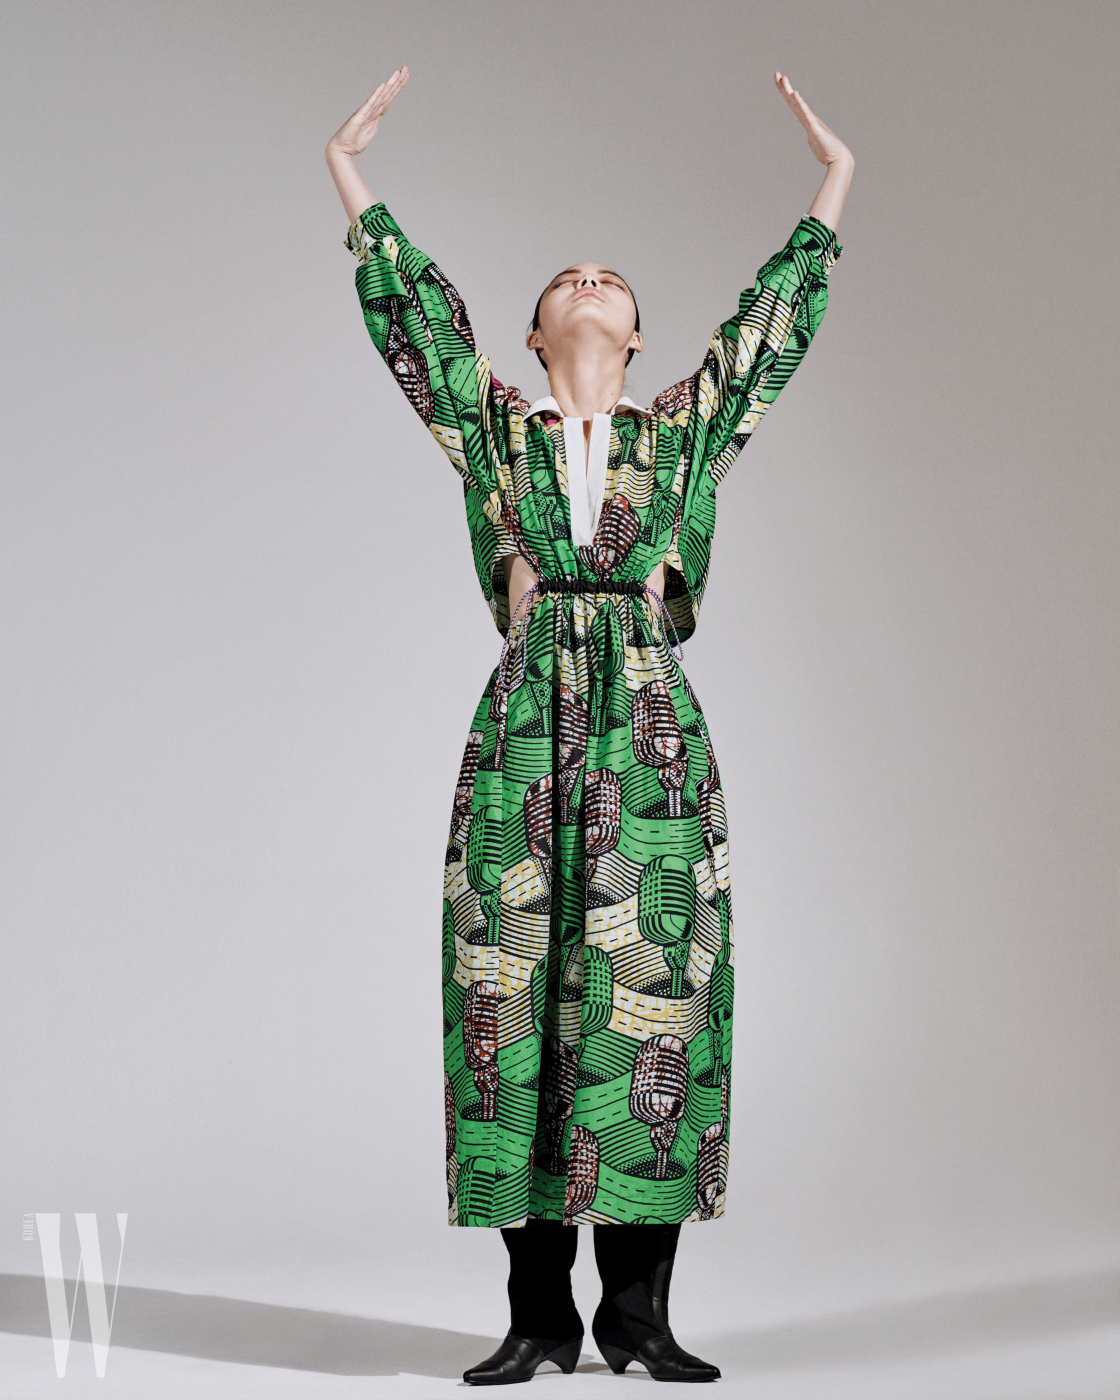 마이크 프린트의 초록색 드레스와 검정 부츠는 스텔라 매카트니 제품. 가격 미정.